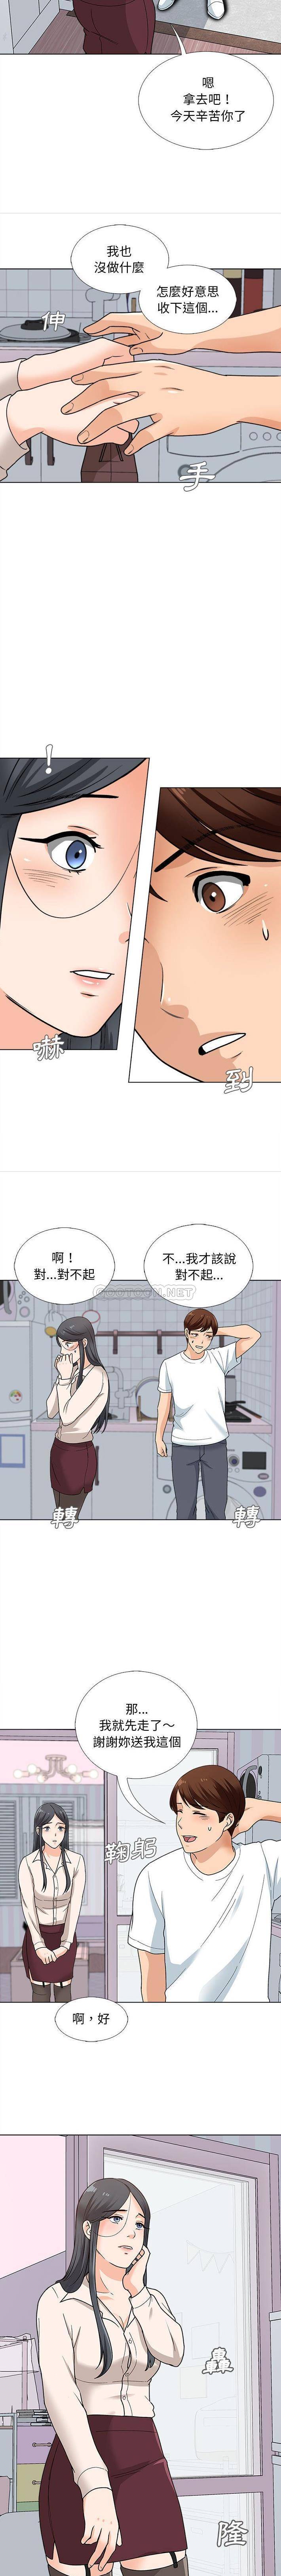 韩国污漫画 幸福公寓 第13话 13